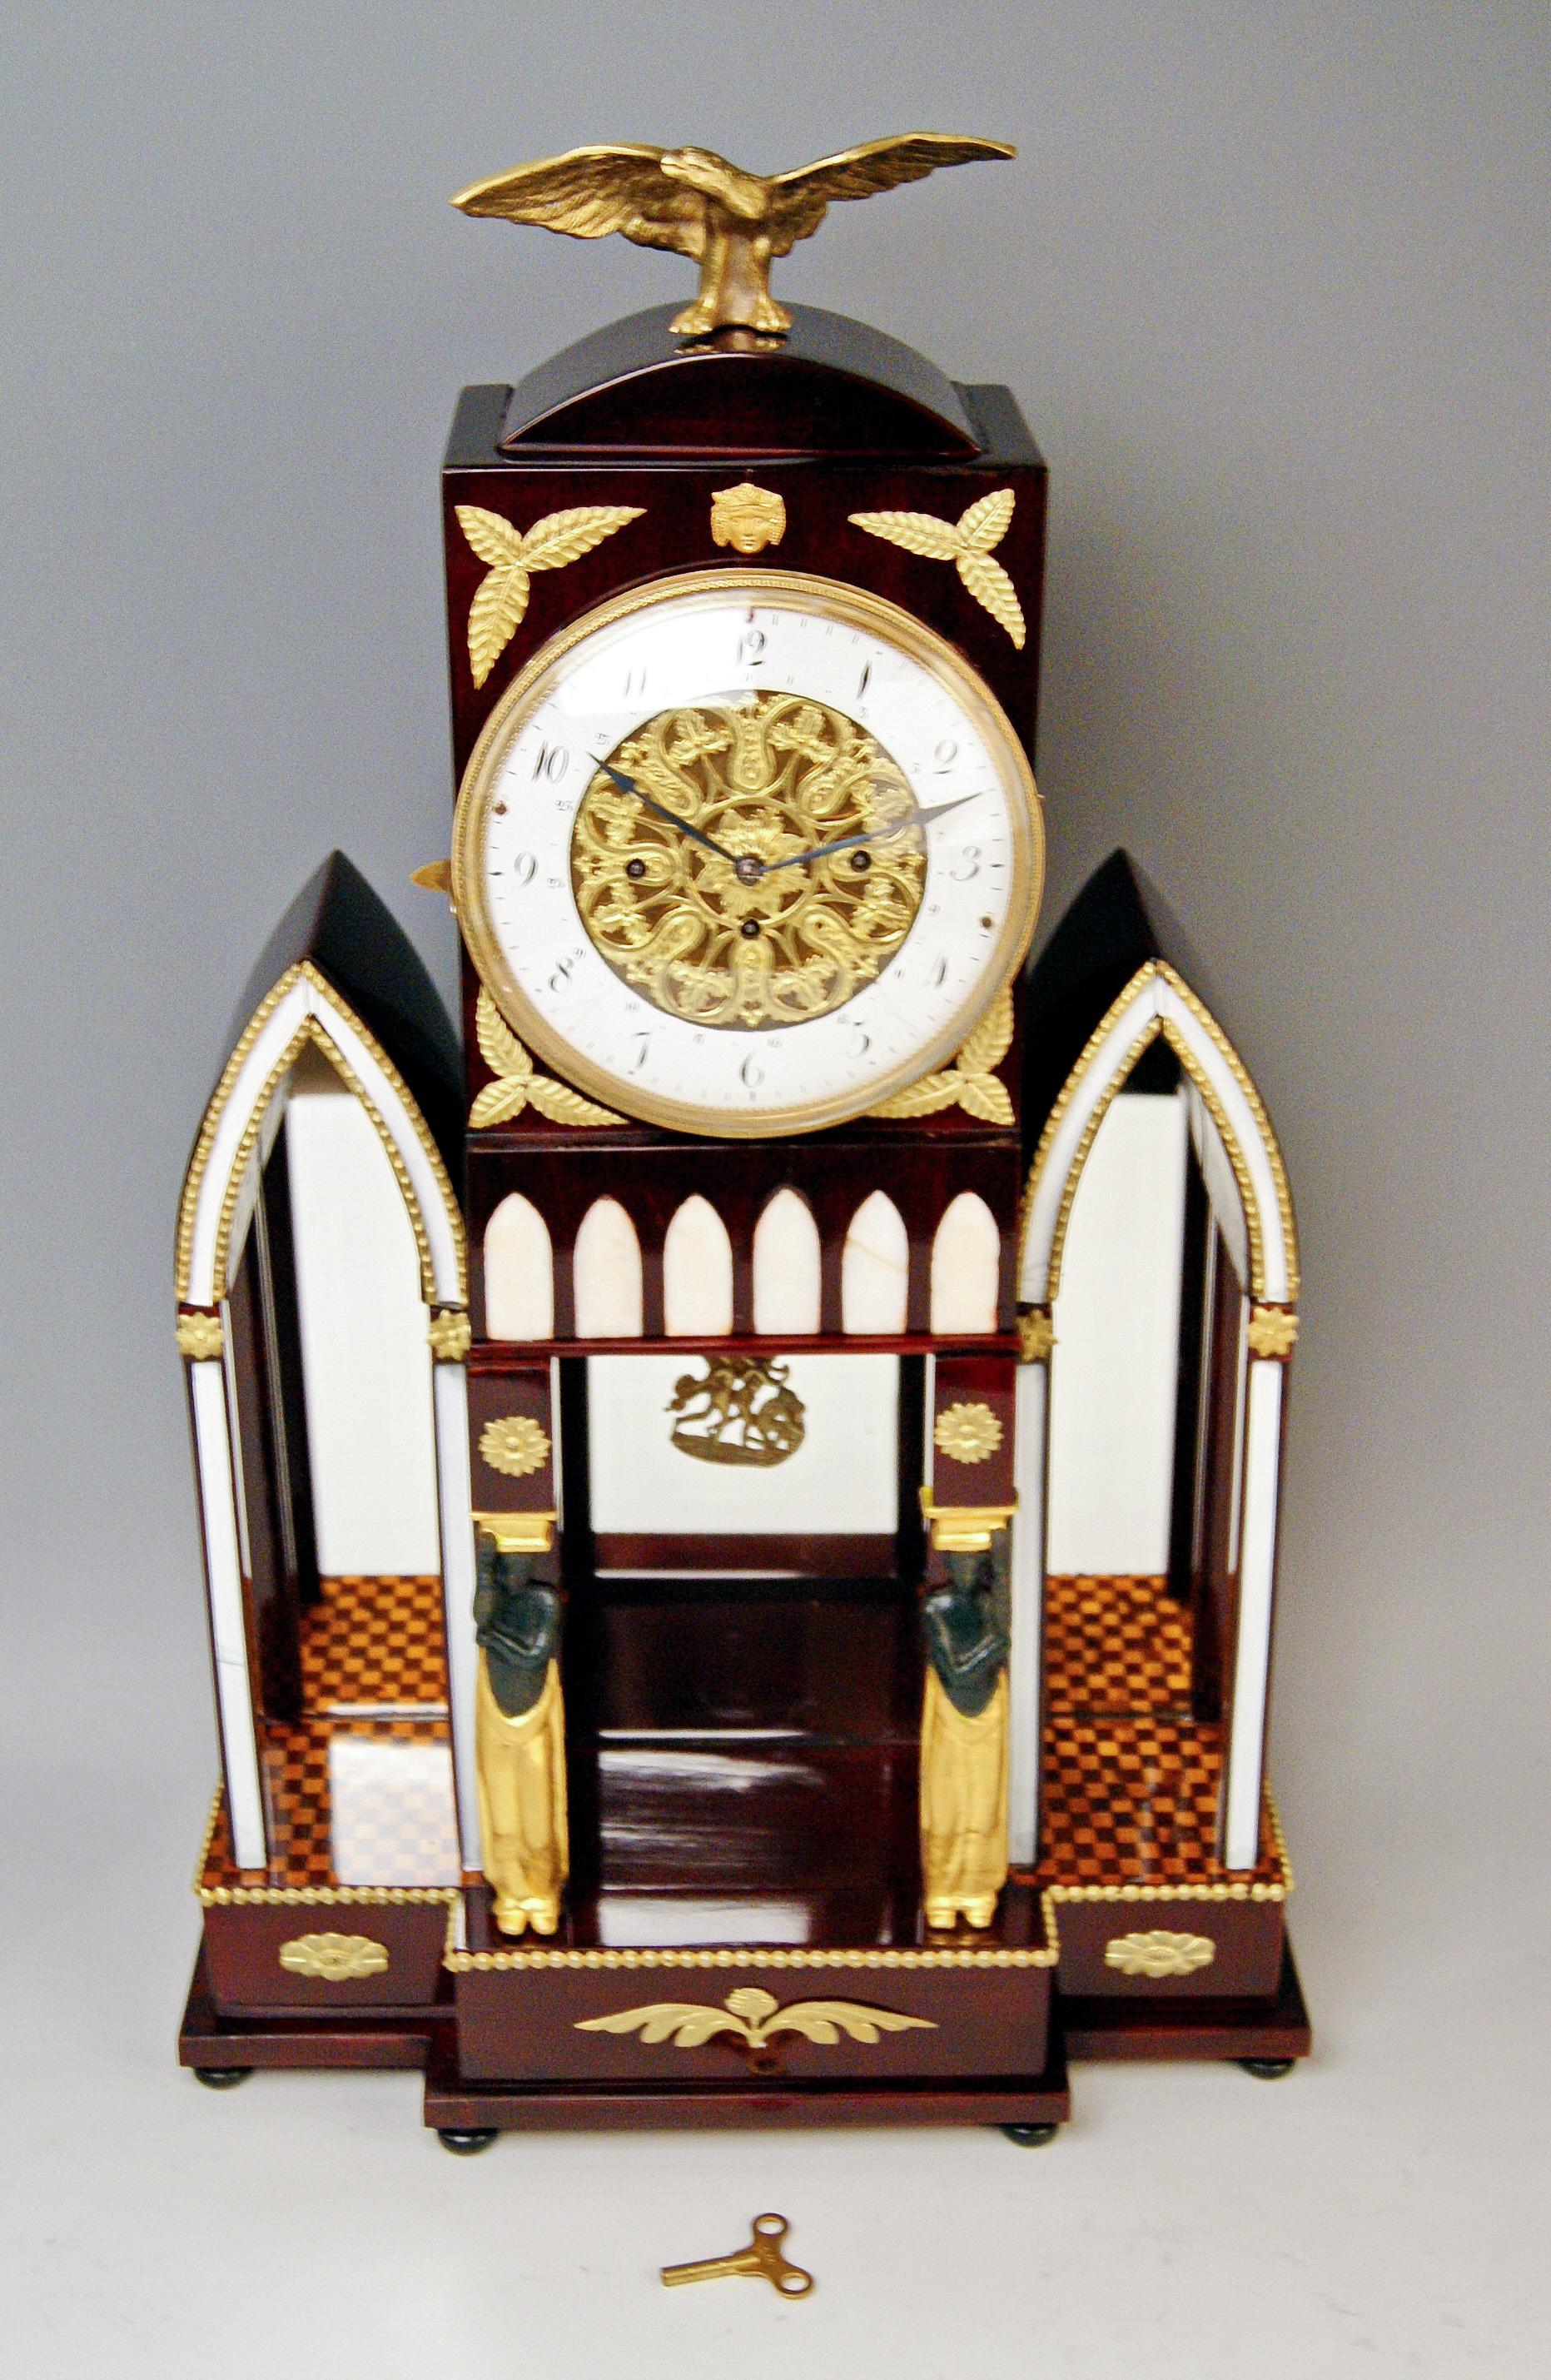 Pendule viennoise à carillon de cheminée / de table Style Empire

Date de fabrication : vers 1810-1820

Matériau :
Le coffre de l'horloge est en bois d'acajou foncé teinté / remis à neuf et poli à la main.
CADRAN ENAMEL (chiffres arabes) /